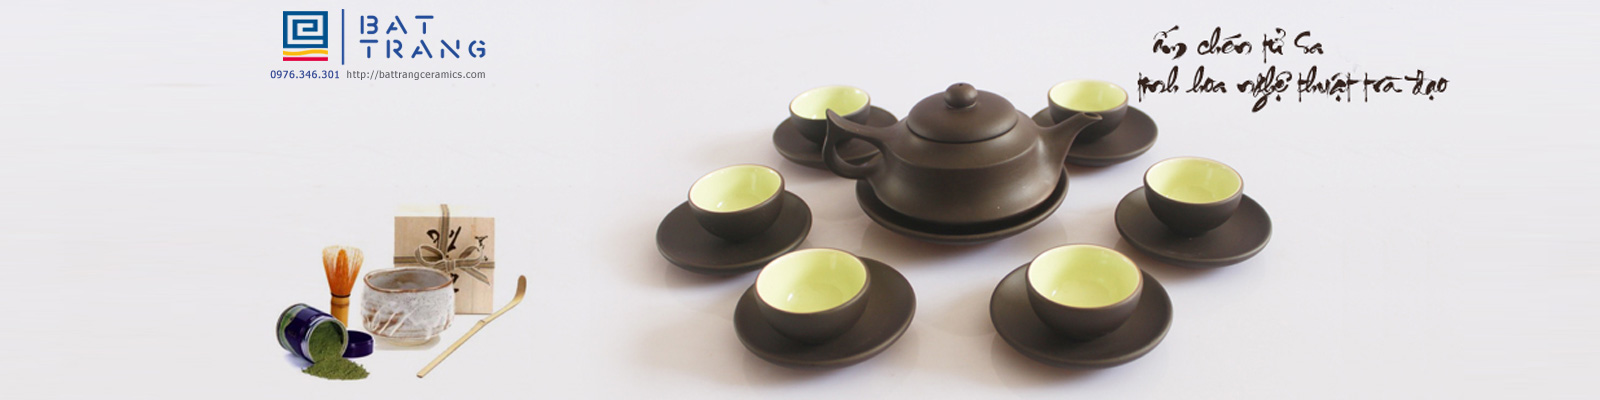 Battrangceramics.com - Chuyên sản xuất và phân phối các sản phẩm gốm sứ Bát Tràng, gốm sứ Bát Tràng tại lò, nhận đặt sản xuất gốm sứ làm quà tặng, trưng bày với giá gốc tại xưởng - uy tín chất lượng.